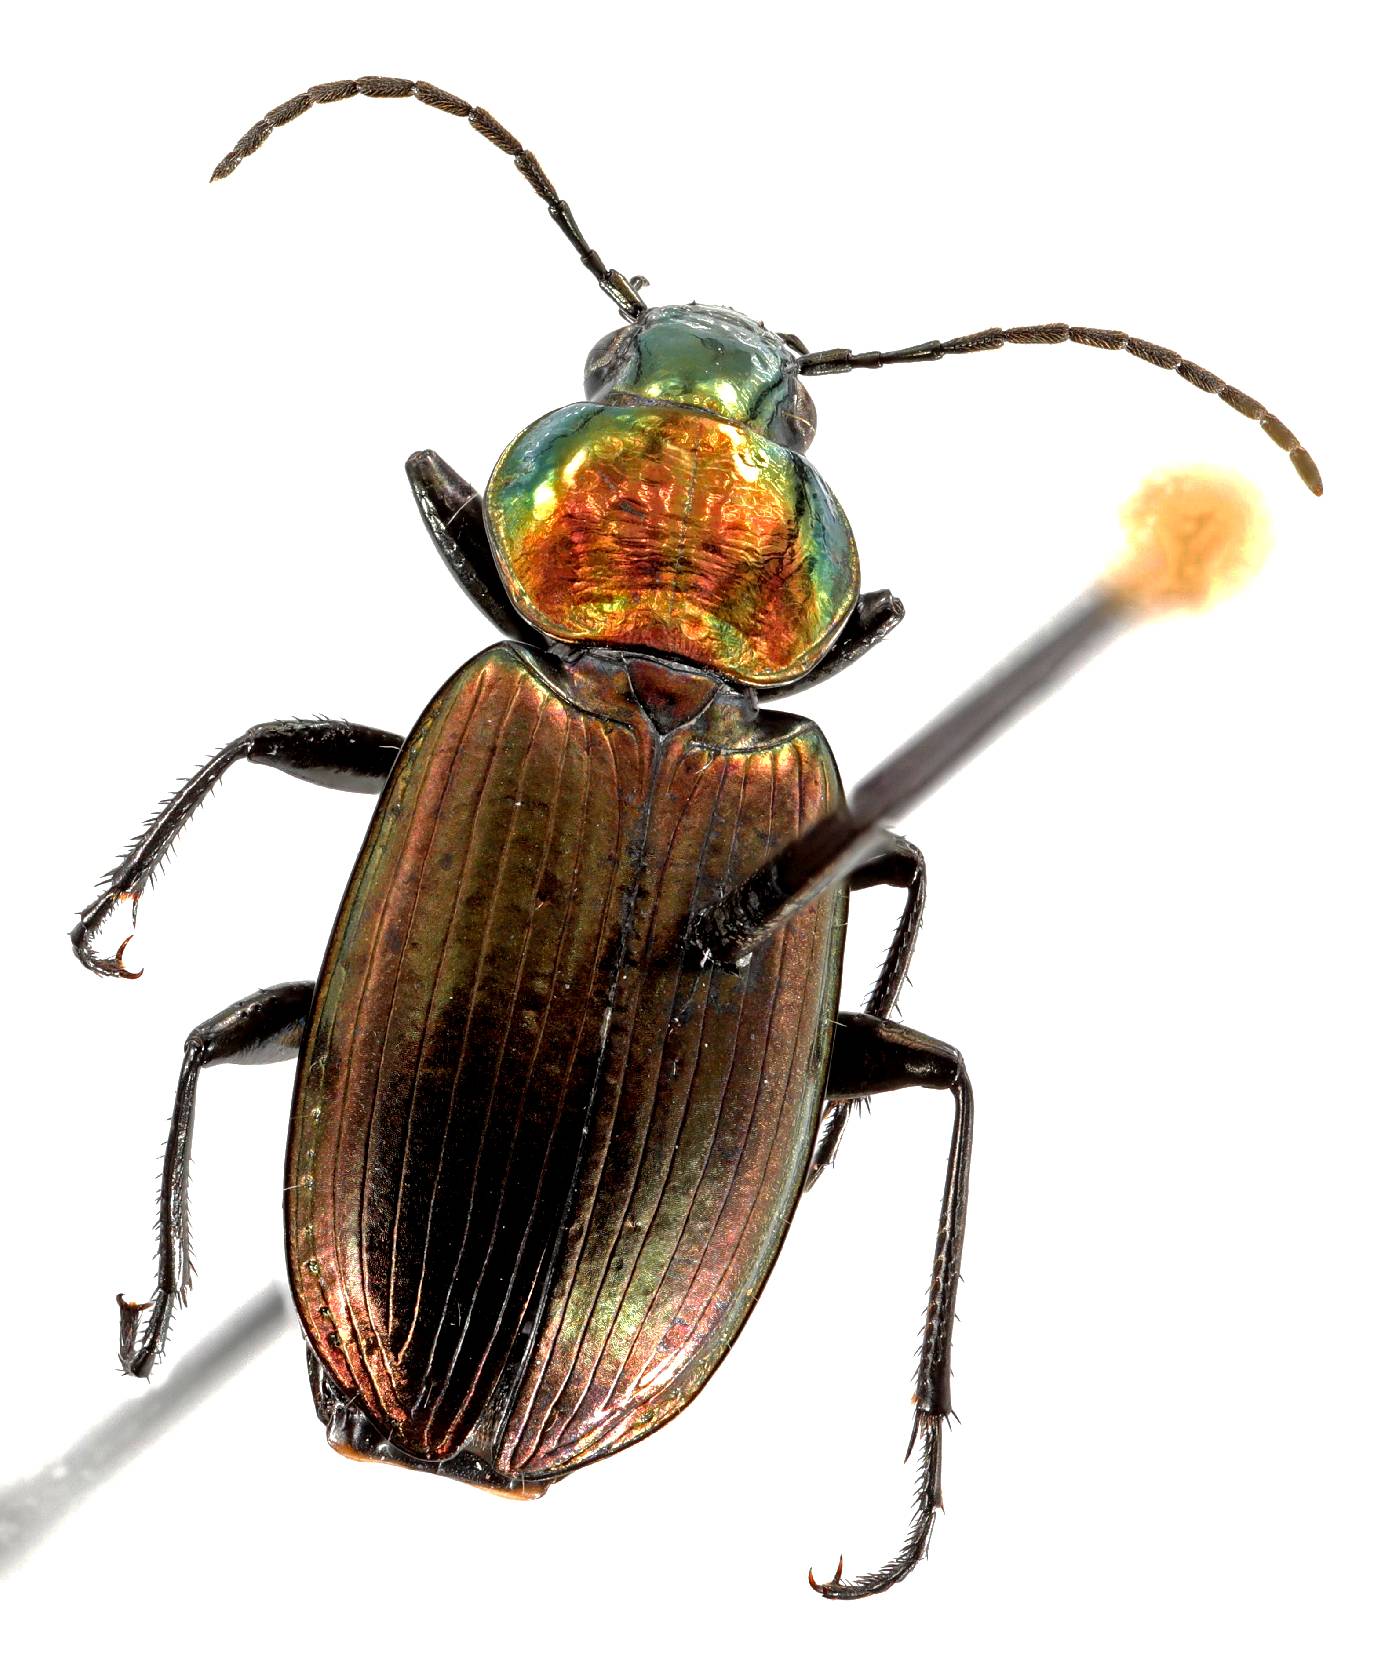 Coleoptera image